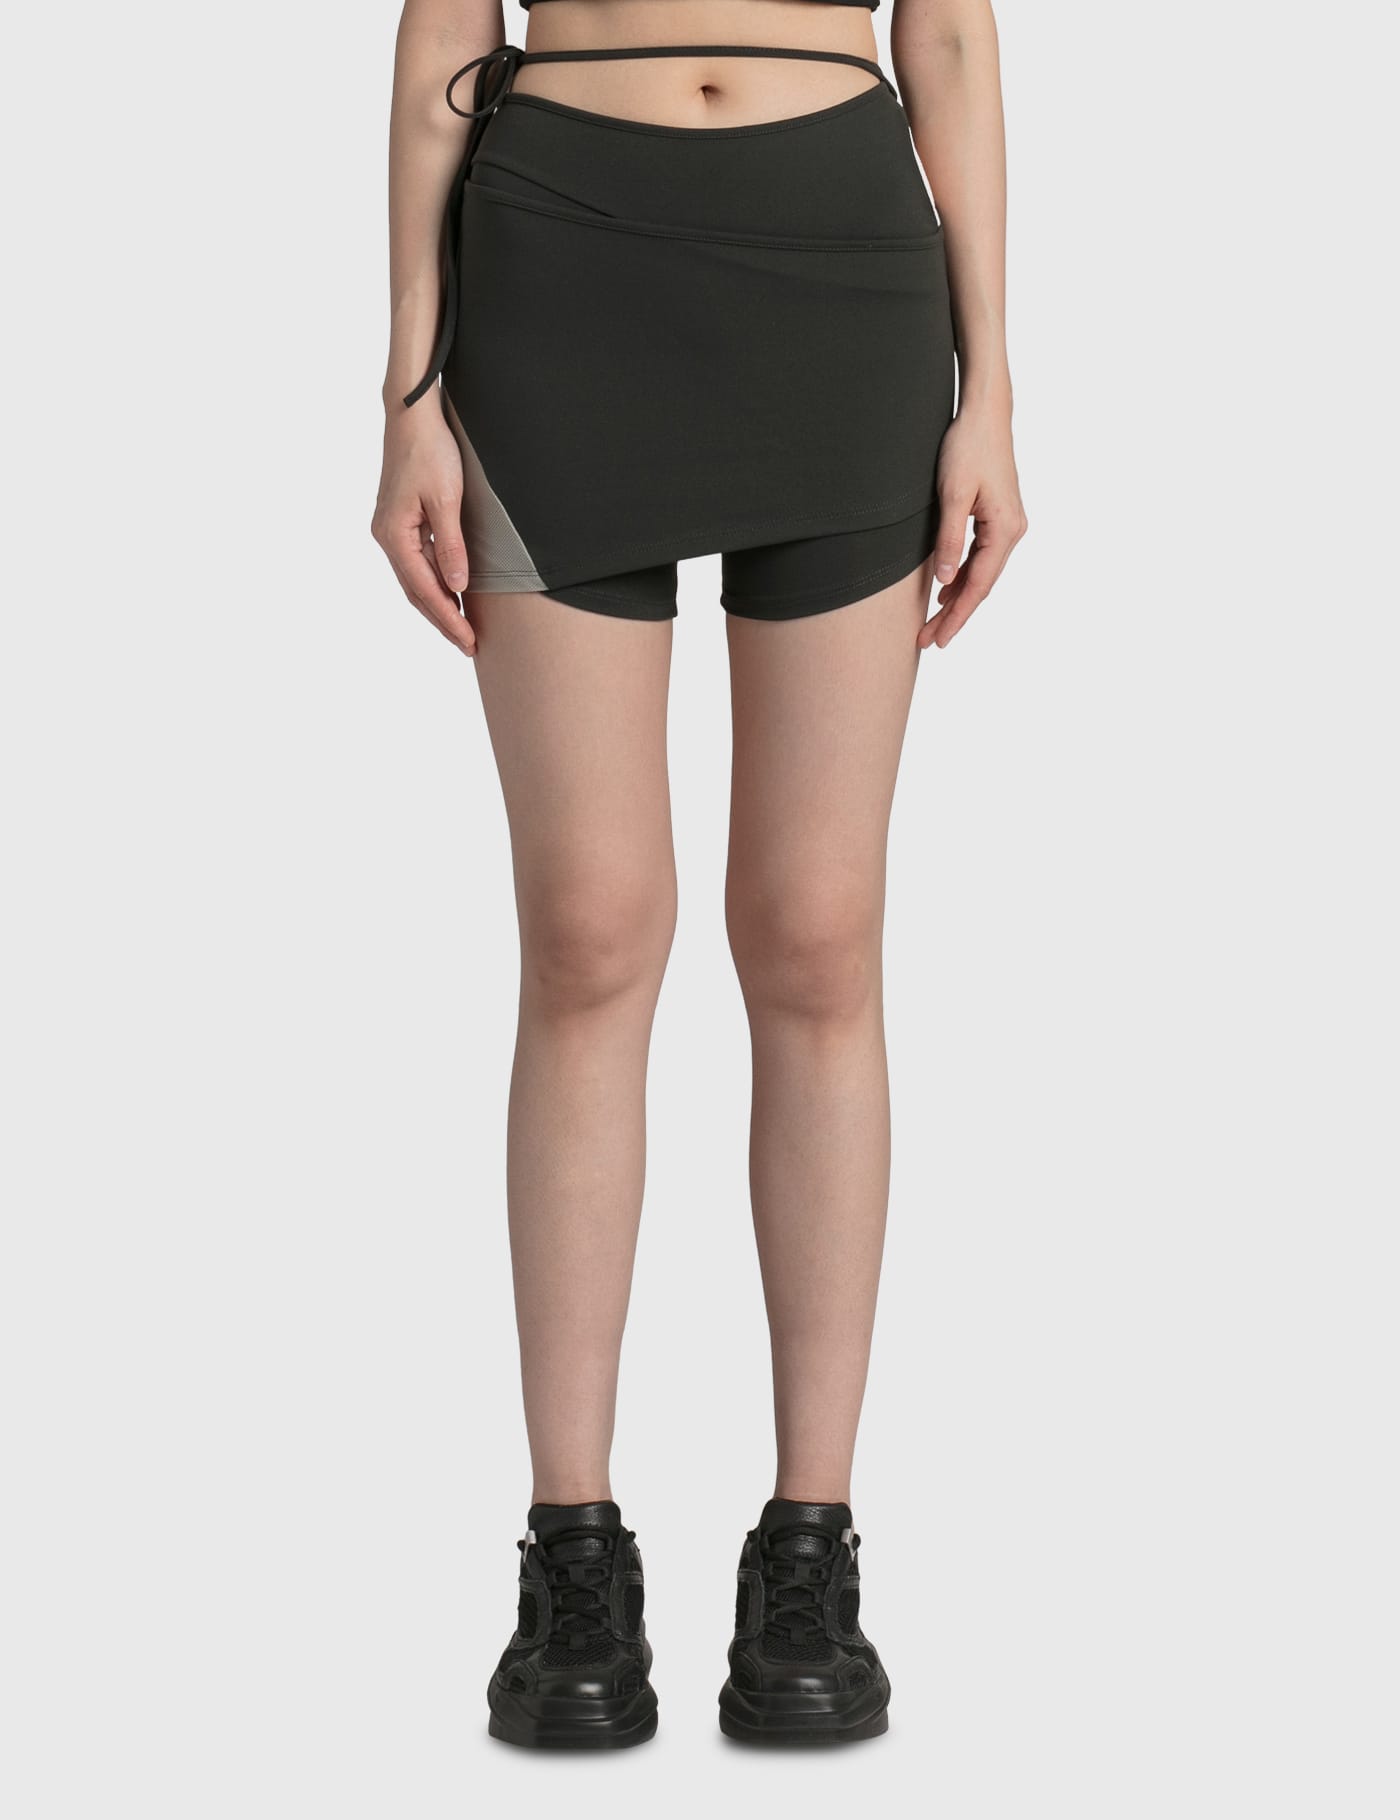 Femme Vêtements Shorts Mini shorts Short en nylon Synthétique Hyein Seo 